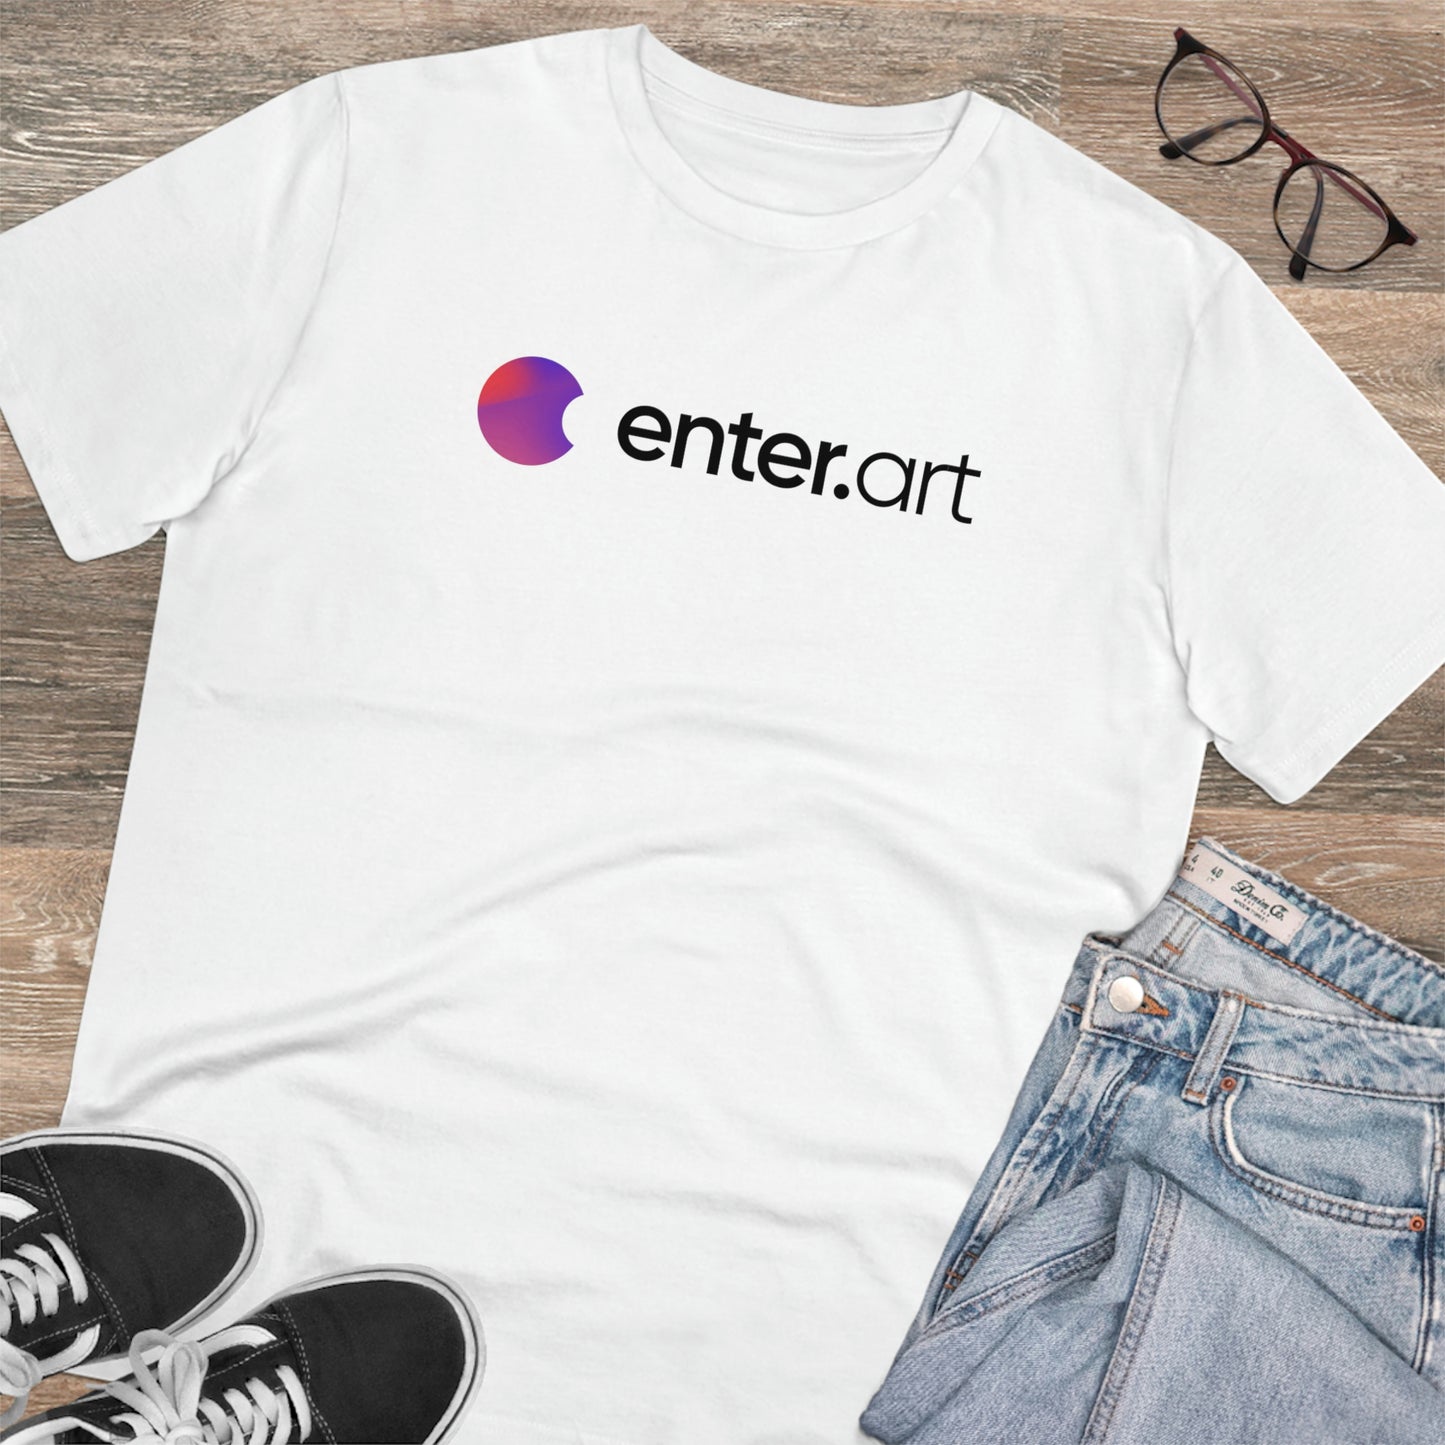 enter.art - White t-shirt